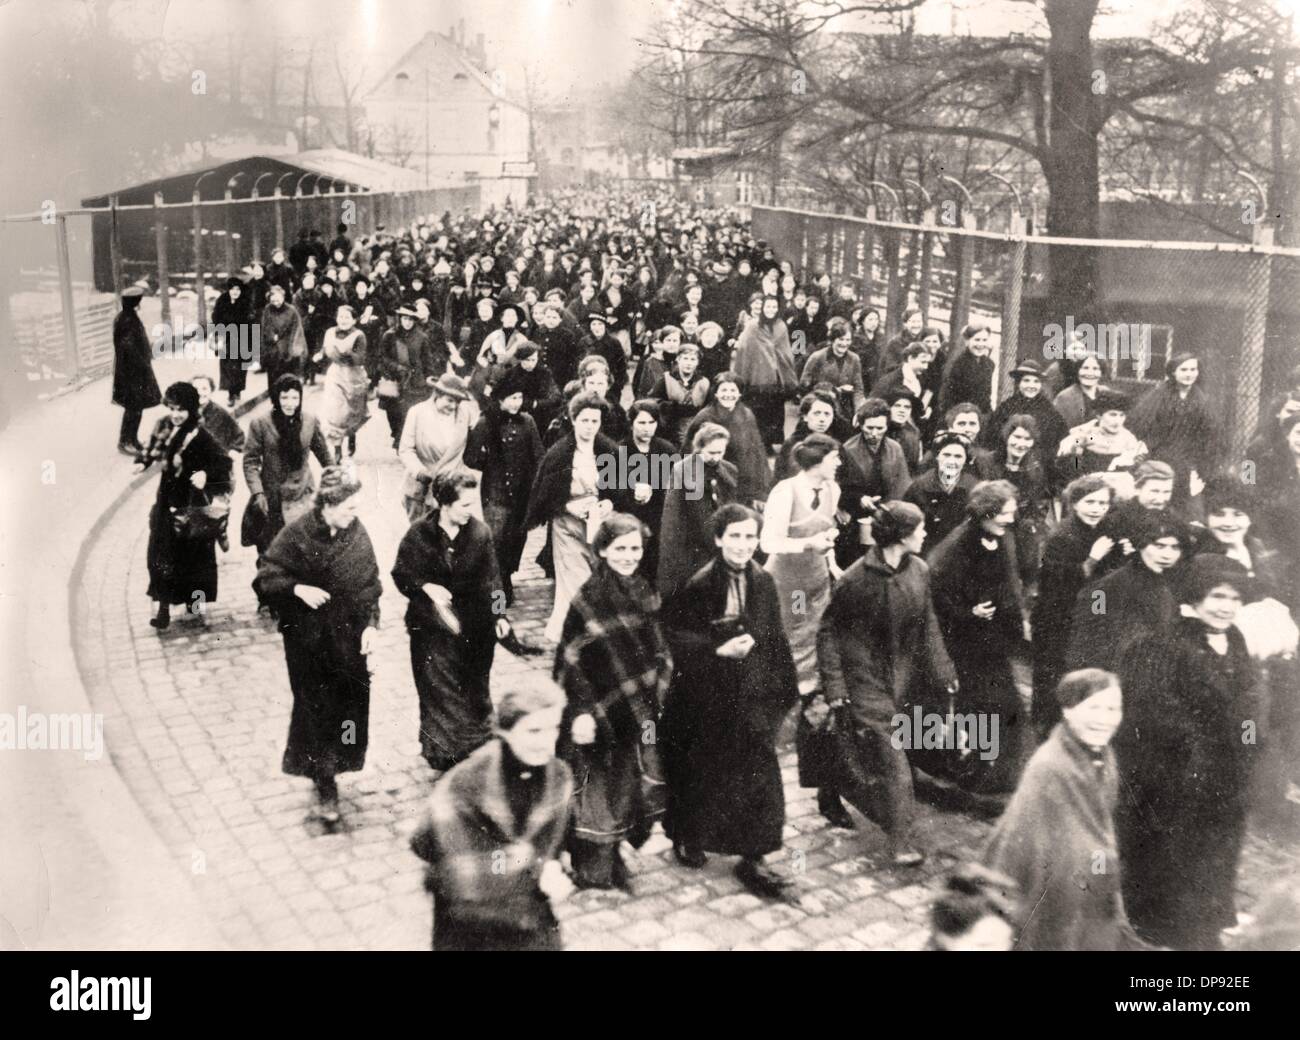 Las mujeres abandonan una fábrica alemana de armas y municiones después de que su turno haya terminado, lugar y fecha desconocidos. Archivo fotográfico für Zeitgeschichte Foto de stock